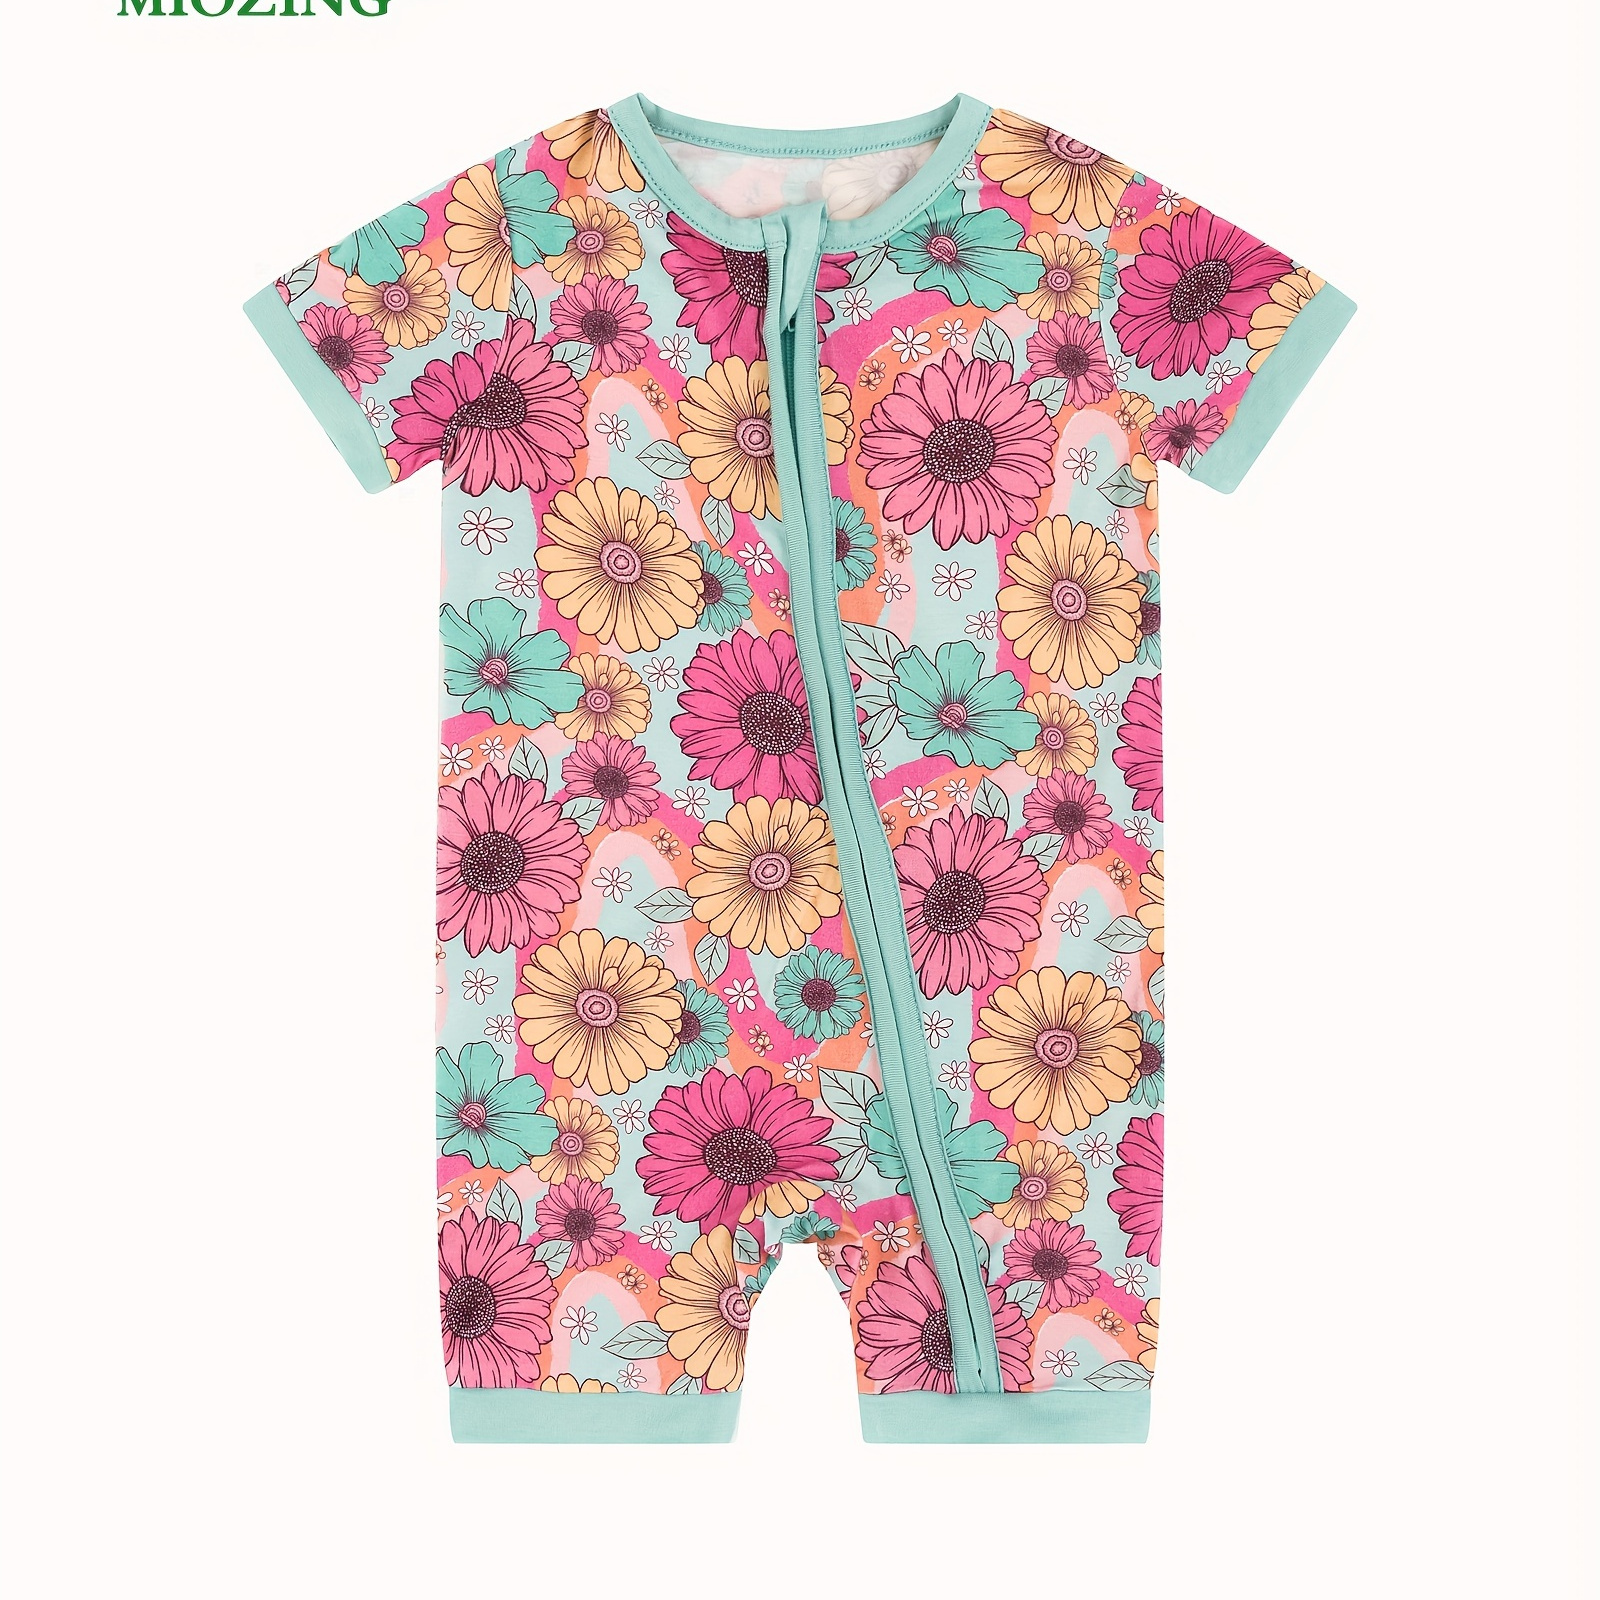 

Miozing Bamboo Fiber Bodysuit For Baby, Colorful Cartoon Flower Pattern Short Sleeve Onesie, Infant & Toddler Girl's Romper